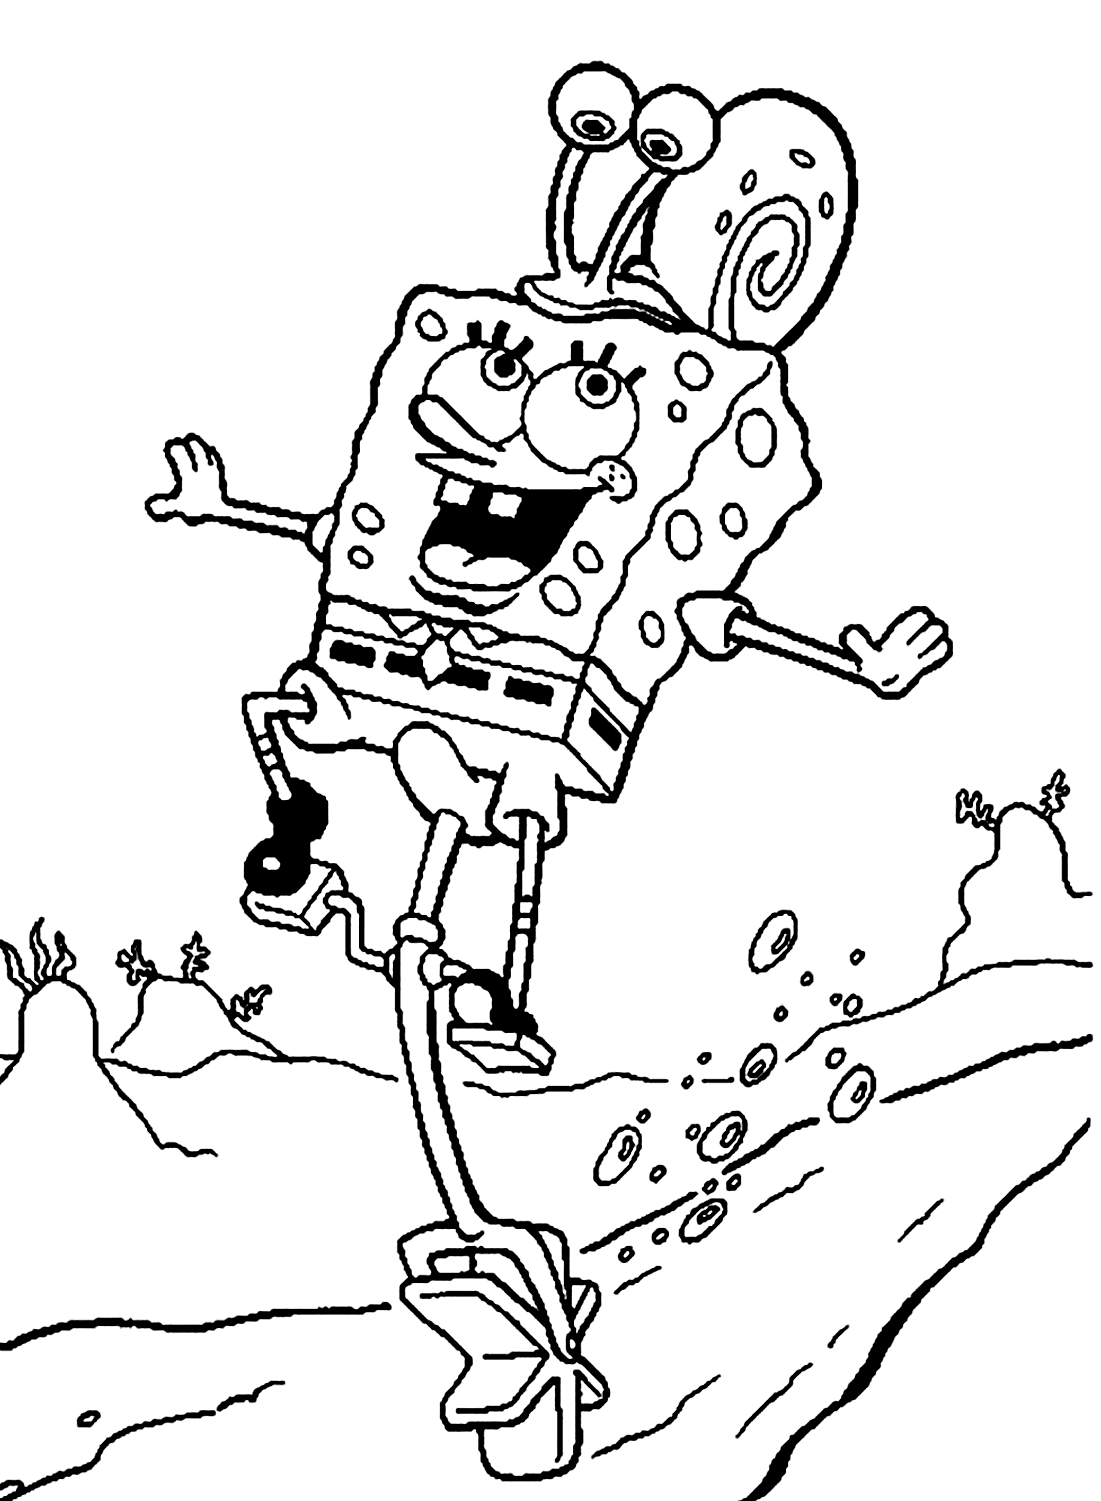 Spongebob speelt met het slakkleurenvel van Spongebob